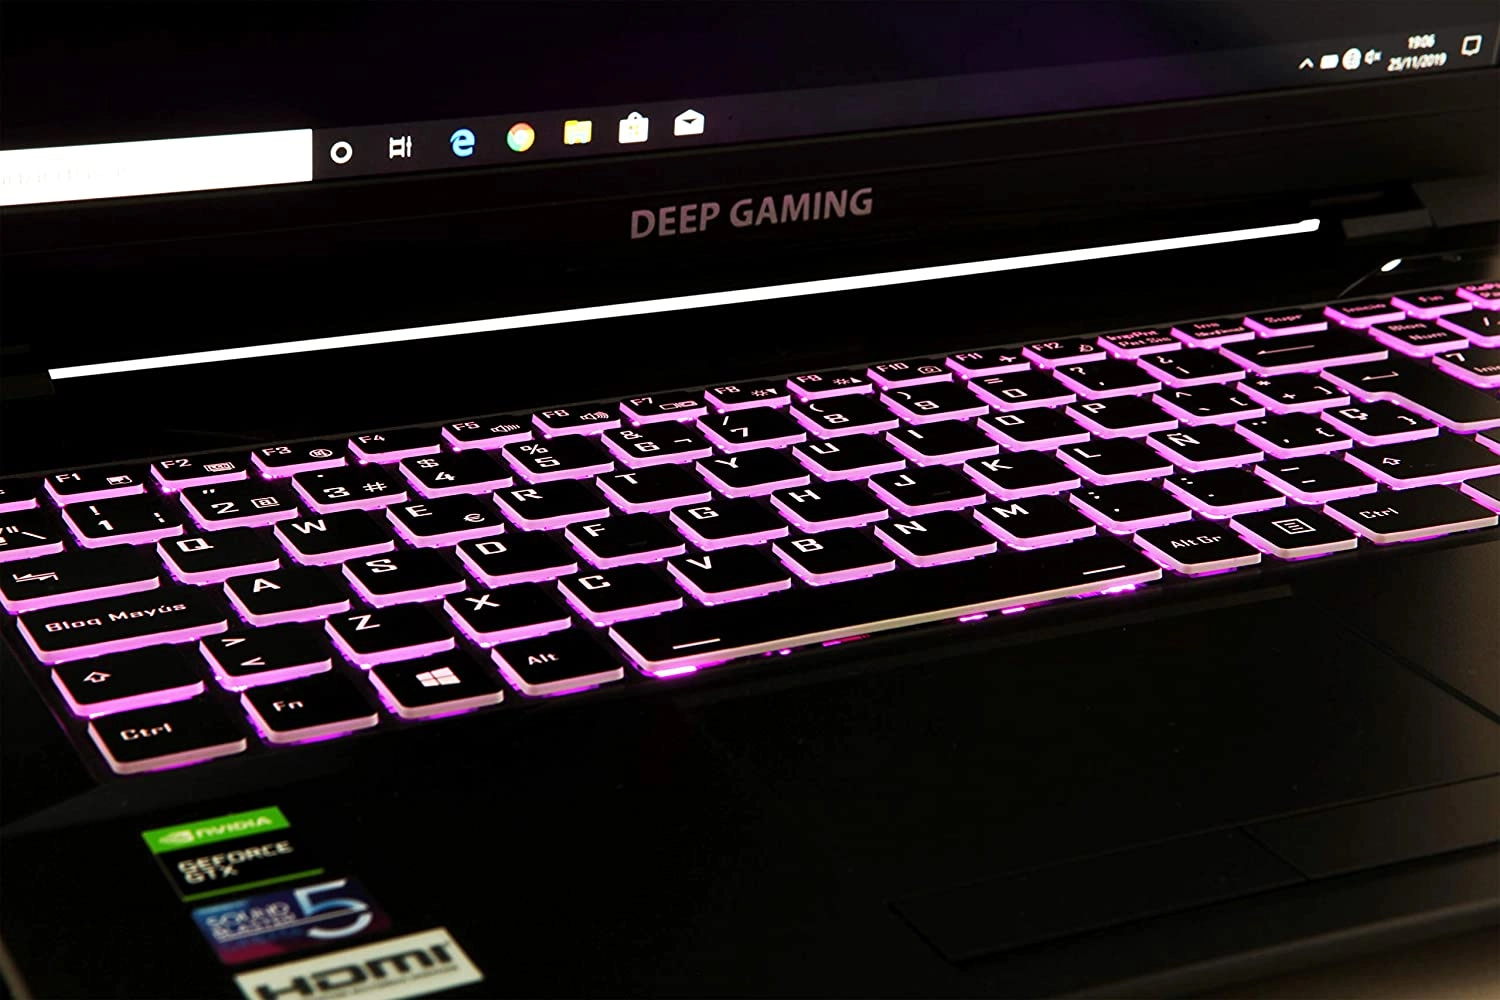 DeepGaming Silex laptop image